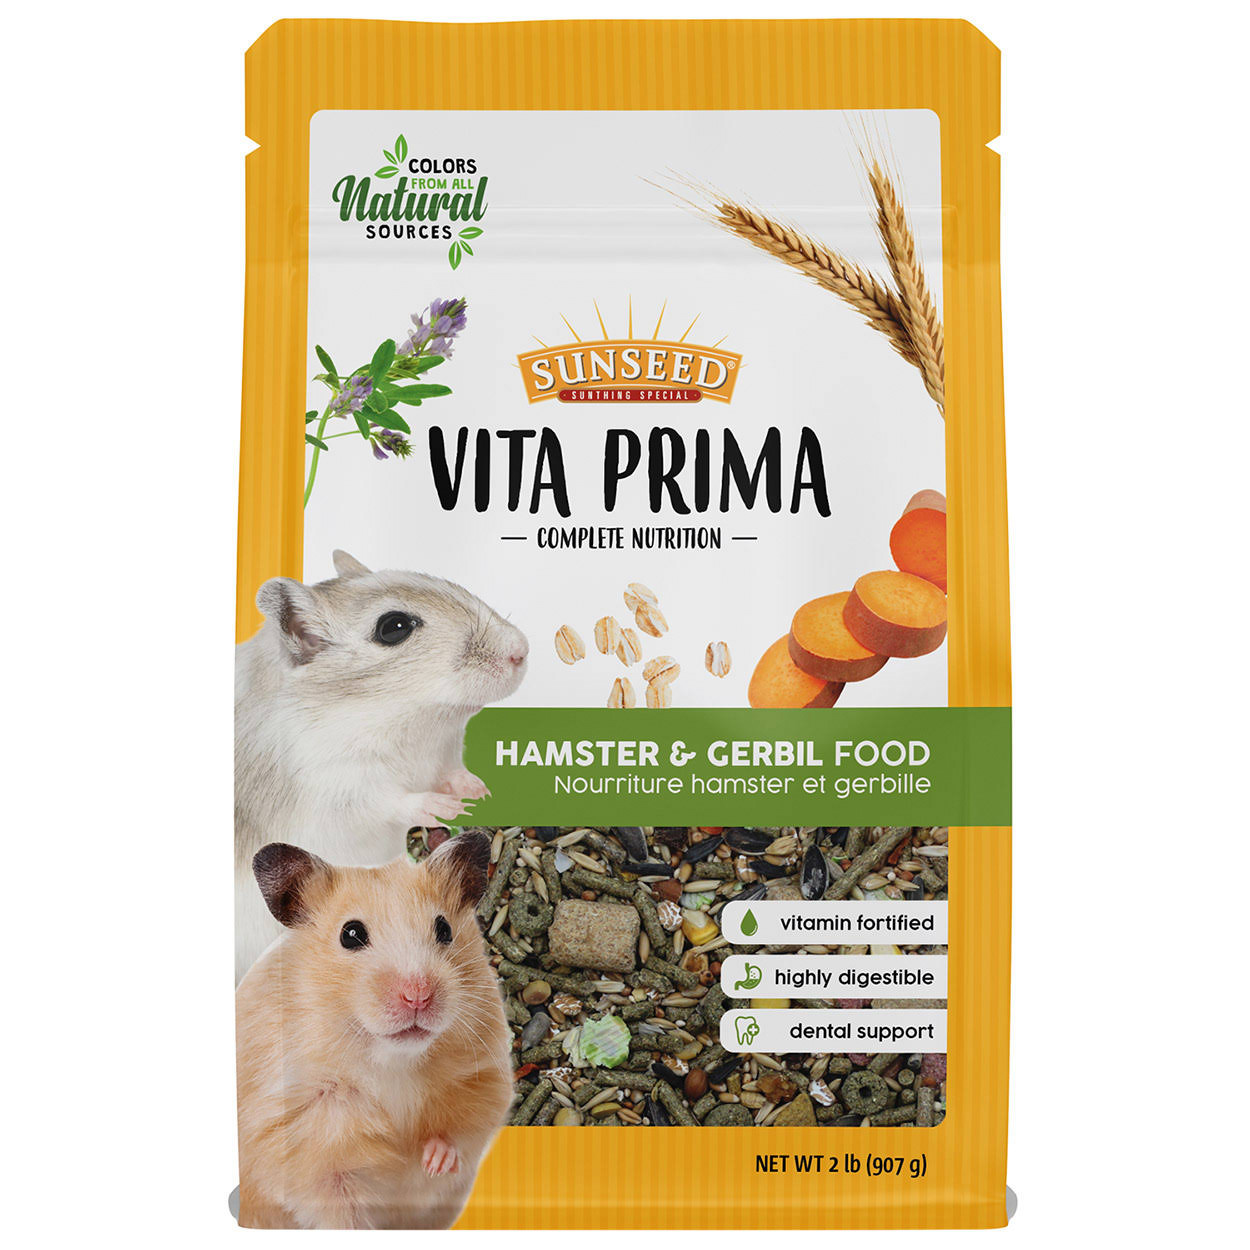 Sunseed Vita Prima Complete Nutrition Hamster & Gerbil Food 2 lb